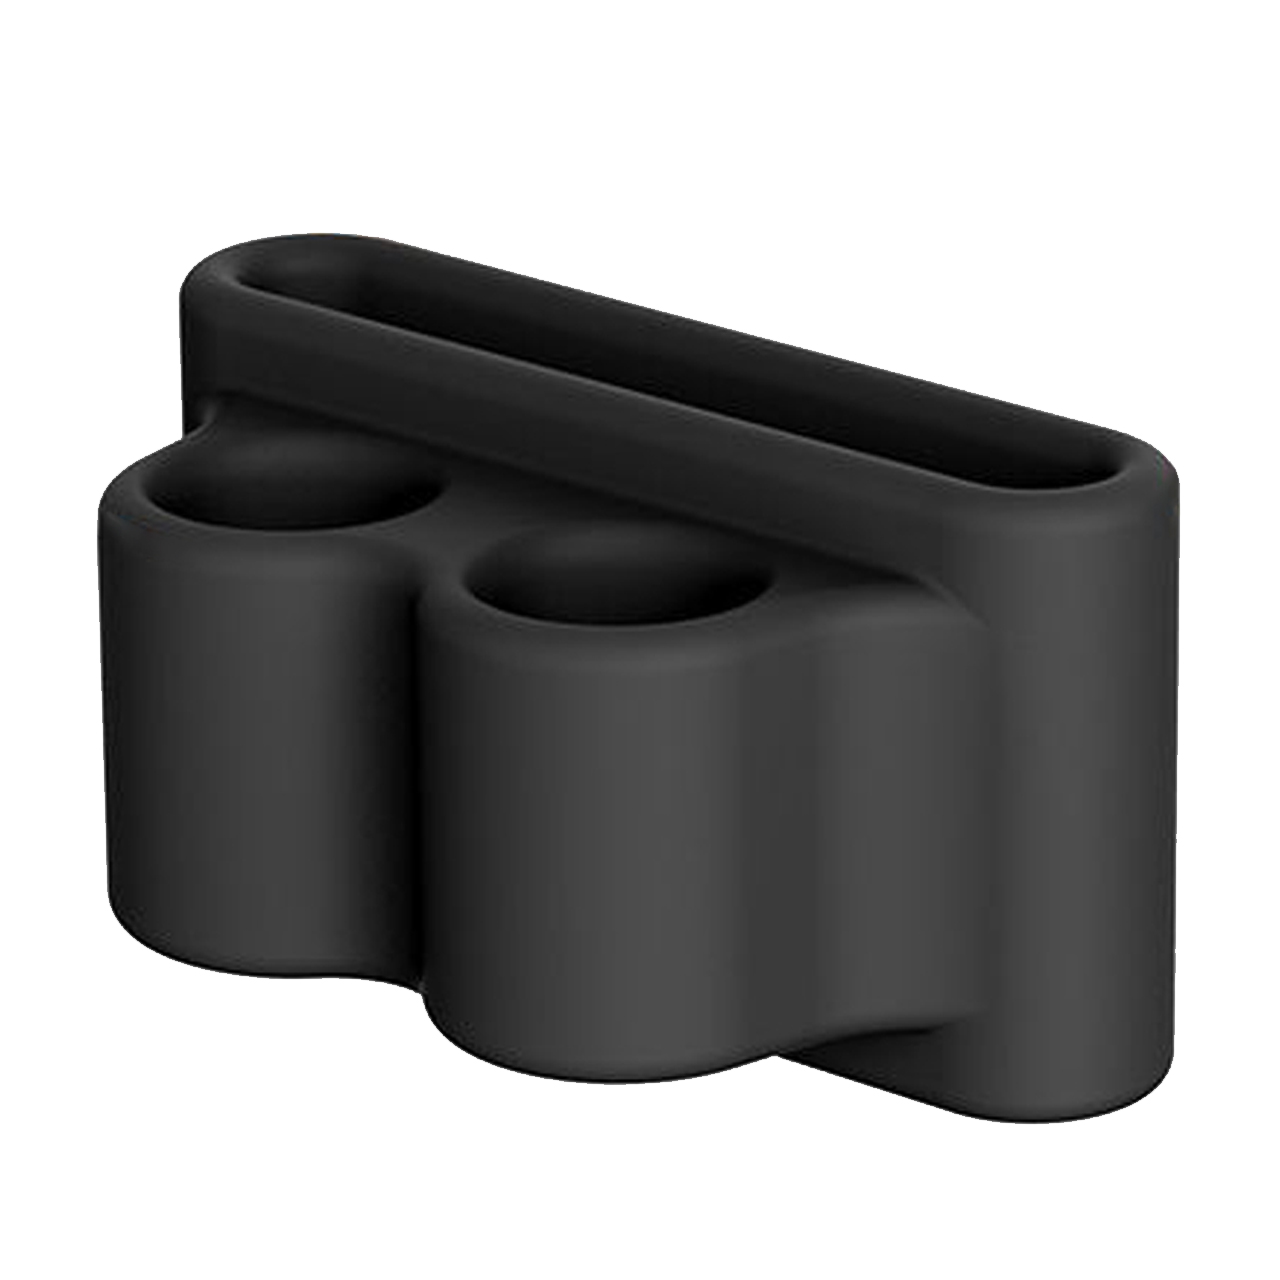 نگهدارنده رینیکا مدل Ear2 مناسب برای اپل ایرپاد